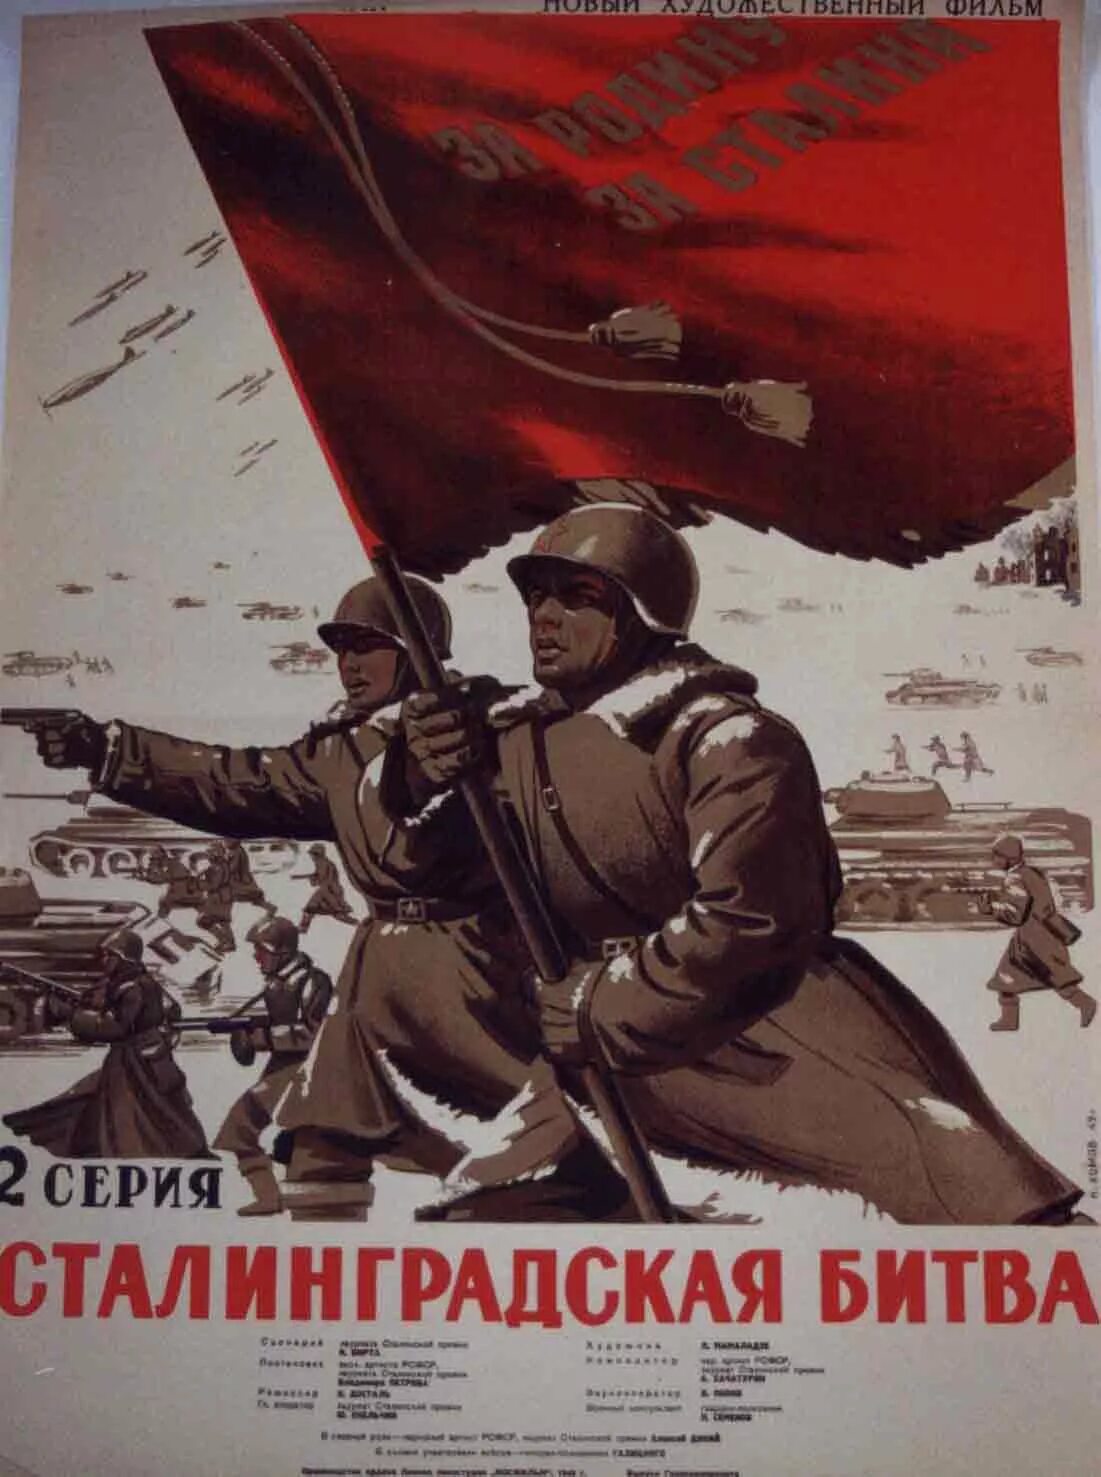 Сталинград плакат Великой Отечественной войны. Плакат победа в Сталинградской битве. Плакаты ВОВ Сталинградская битва. Военные плакаты Сталинград. Битва которой посвящен плакат началась в